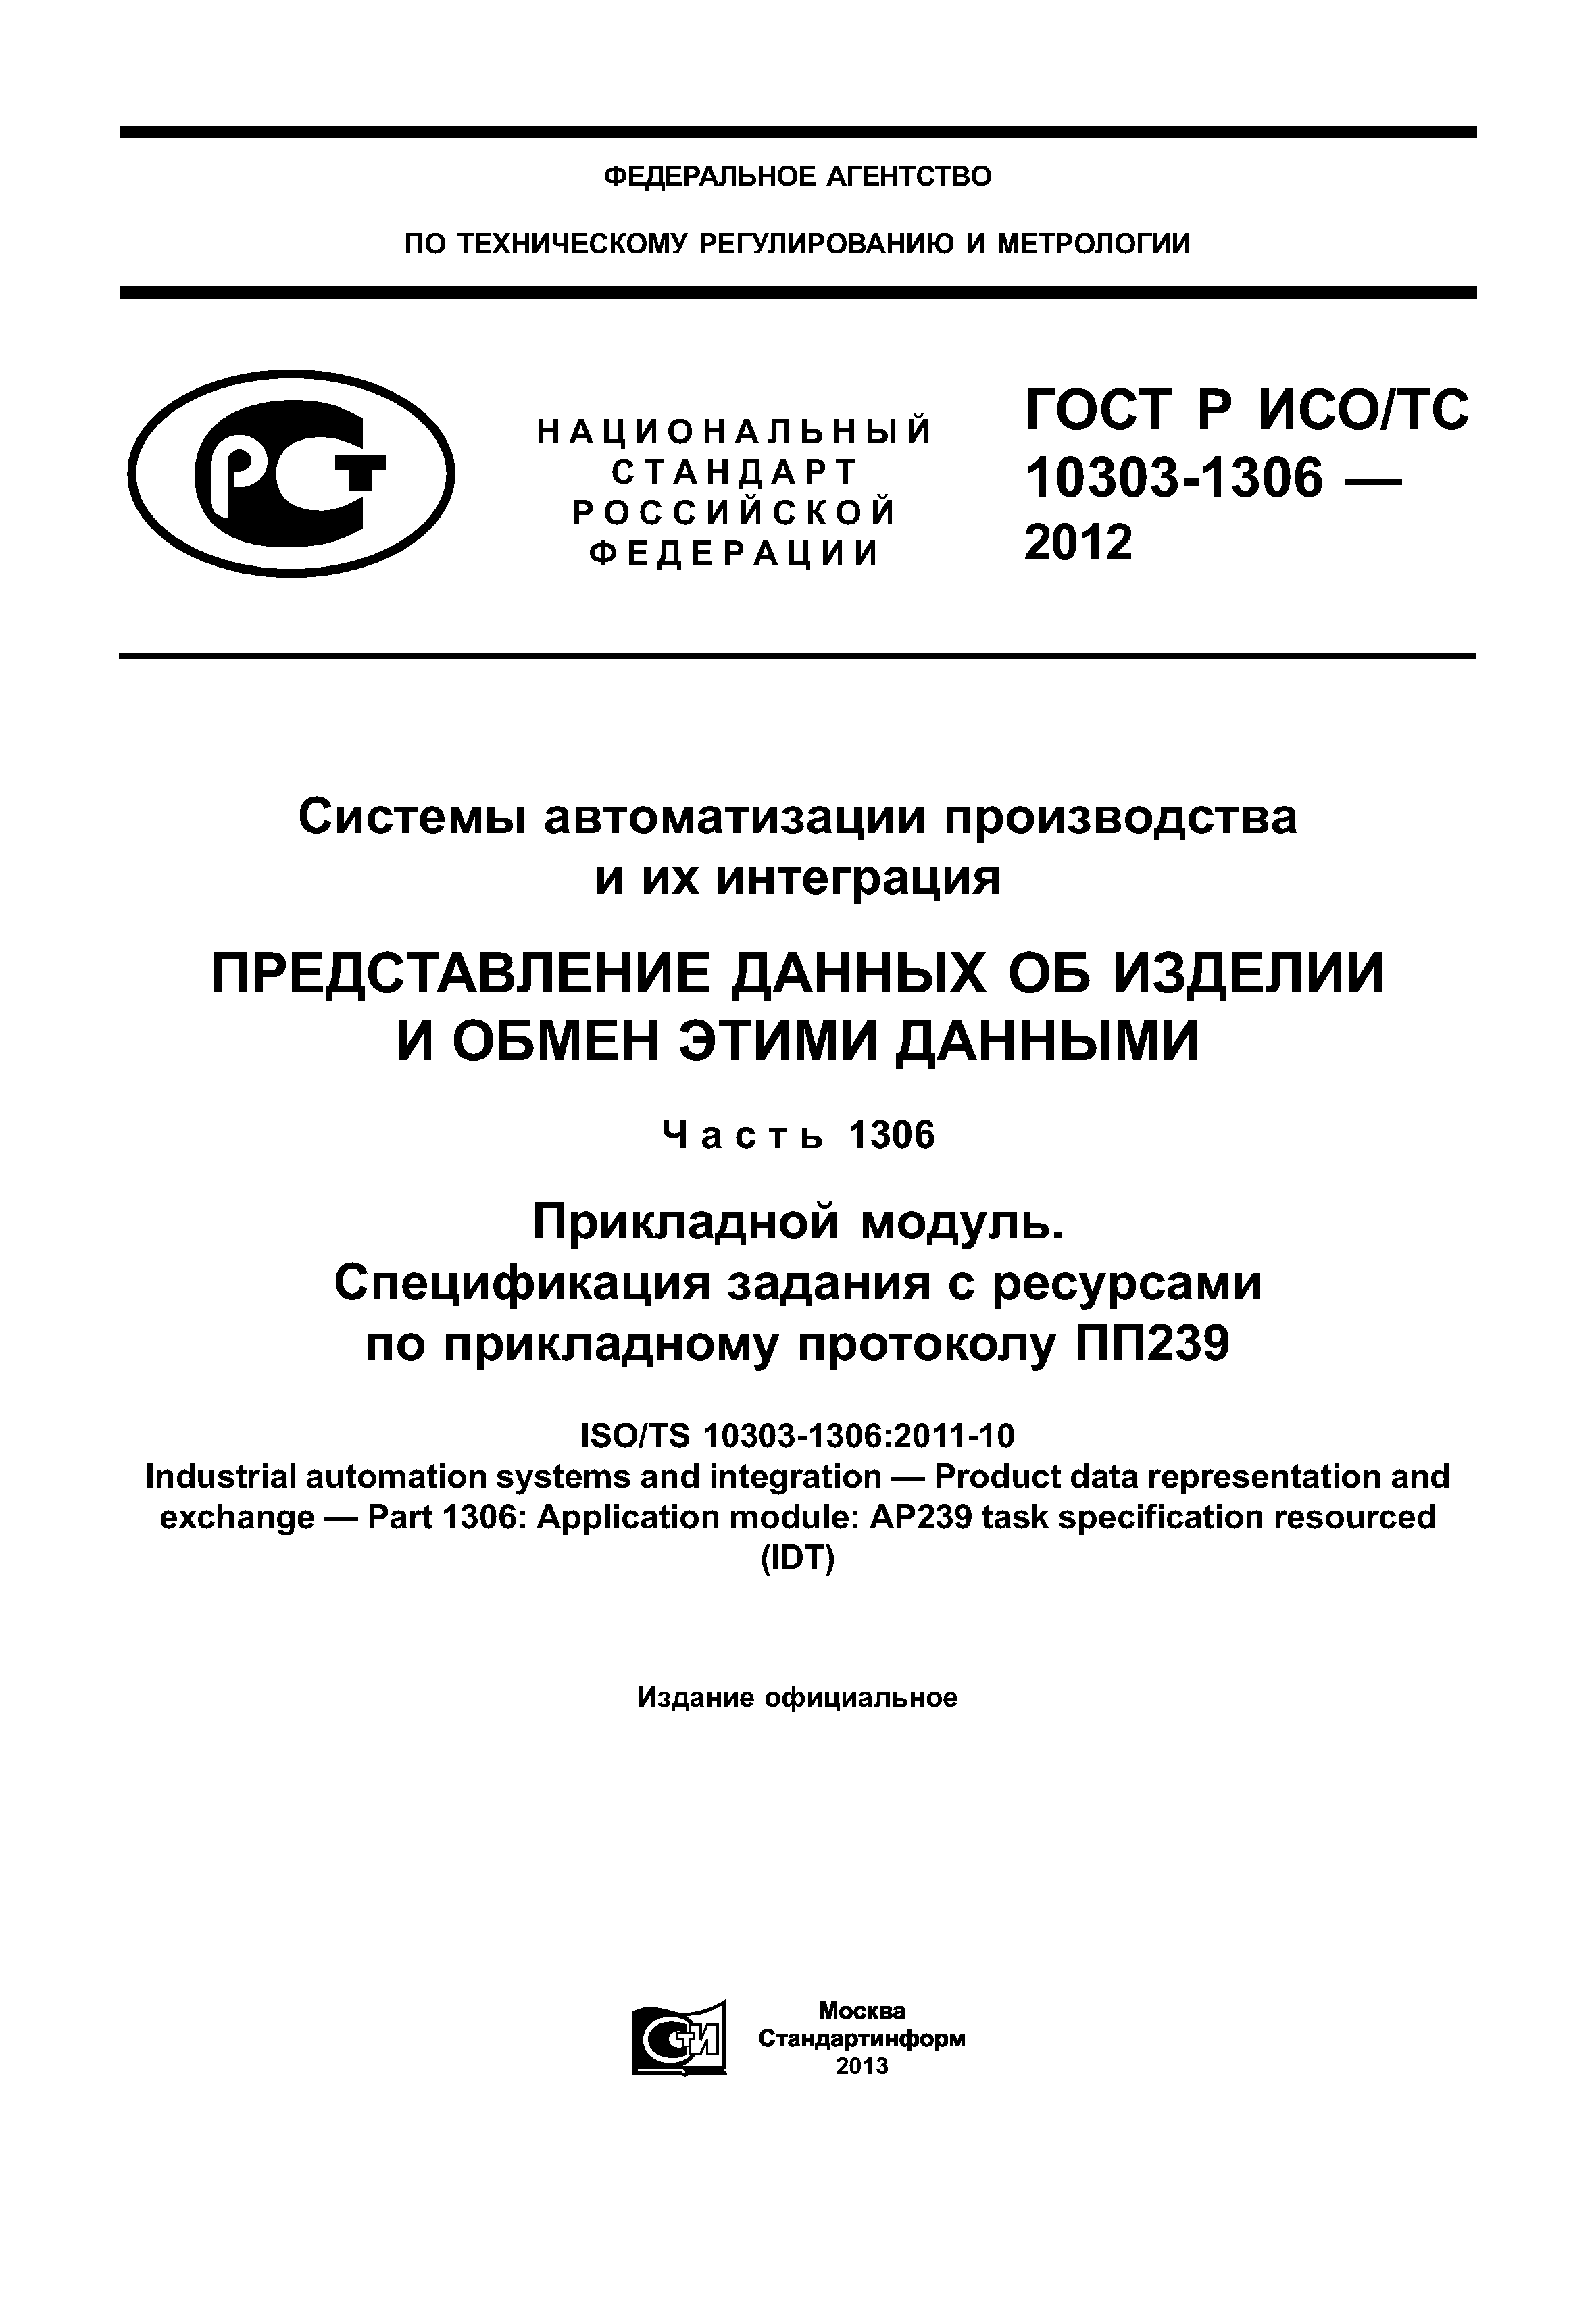 ГОСТ Р ИСО/ТС 10303-1306-2012